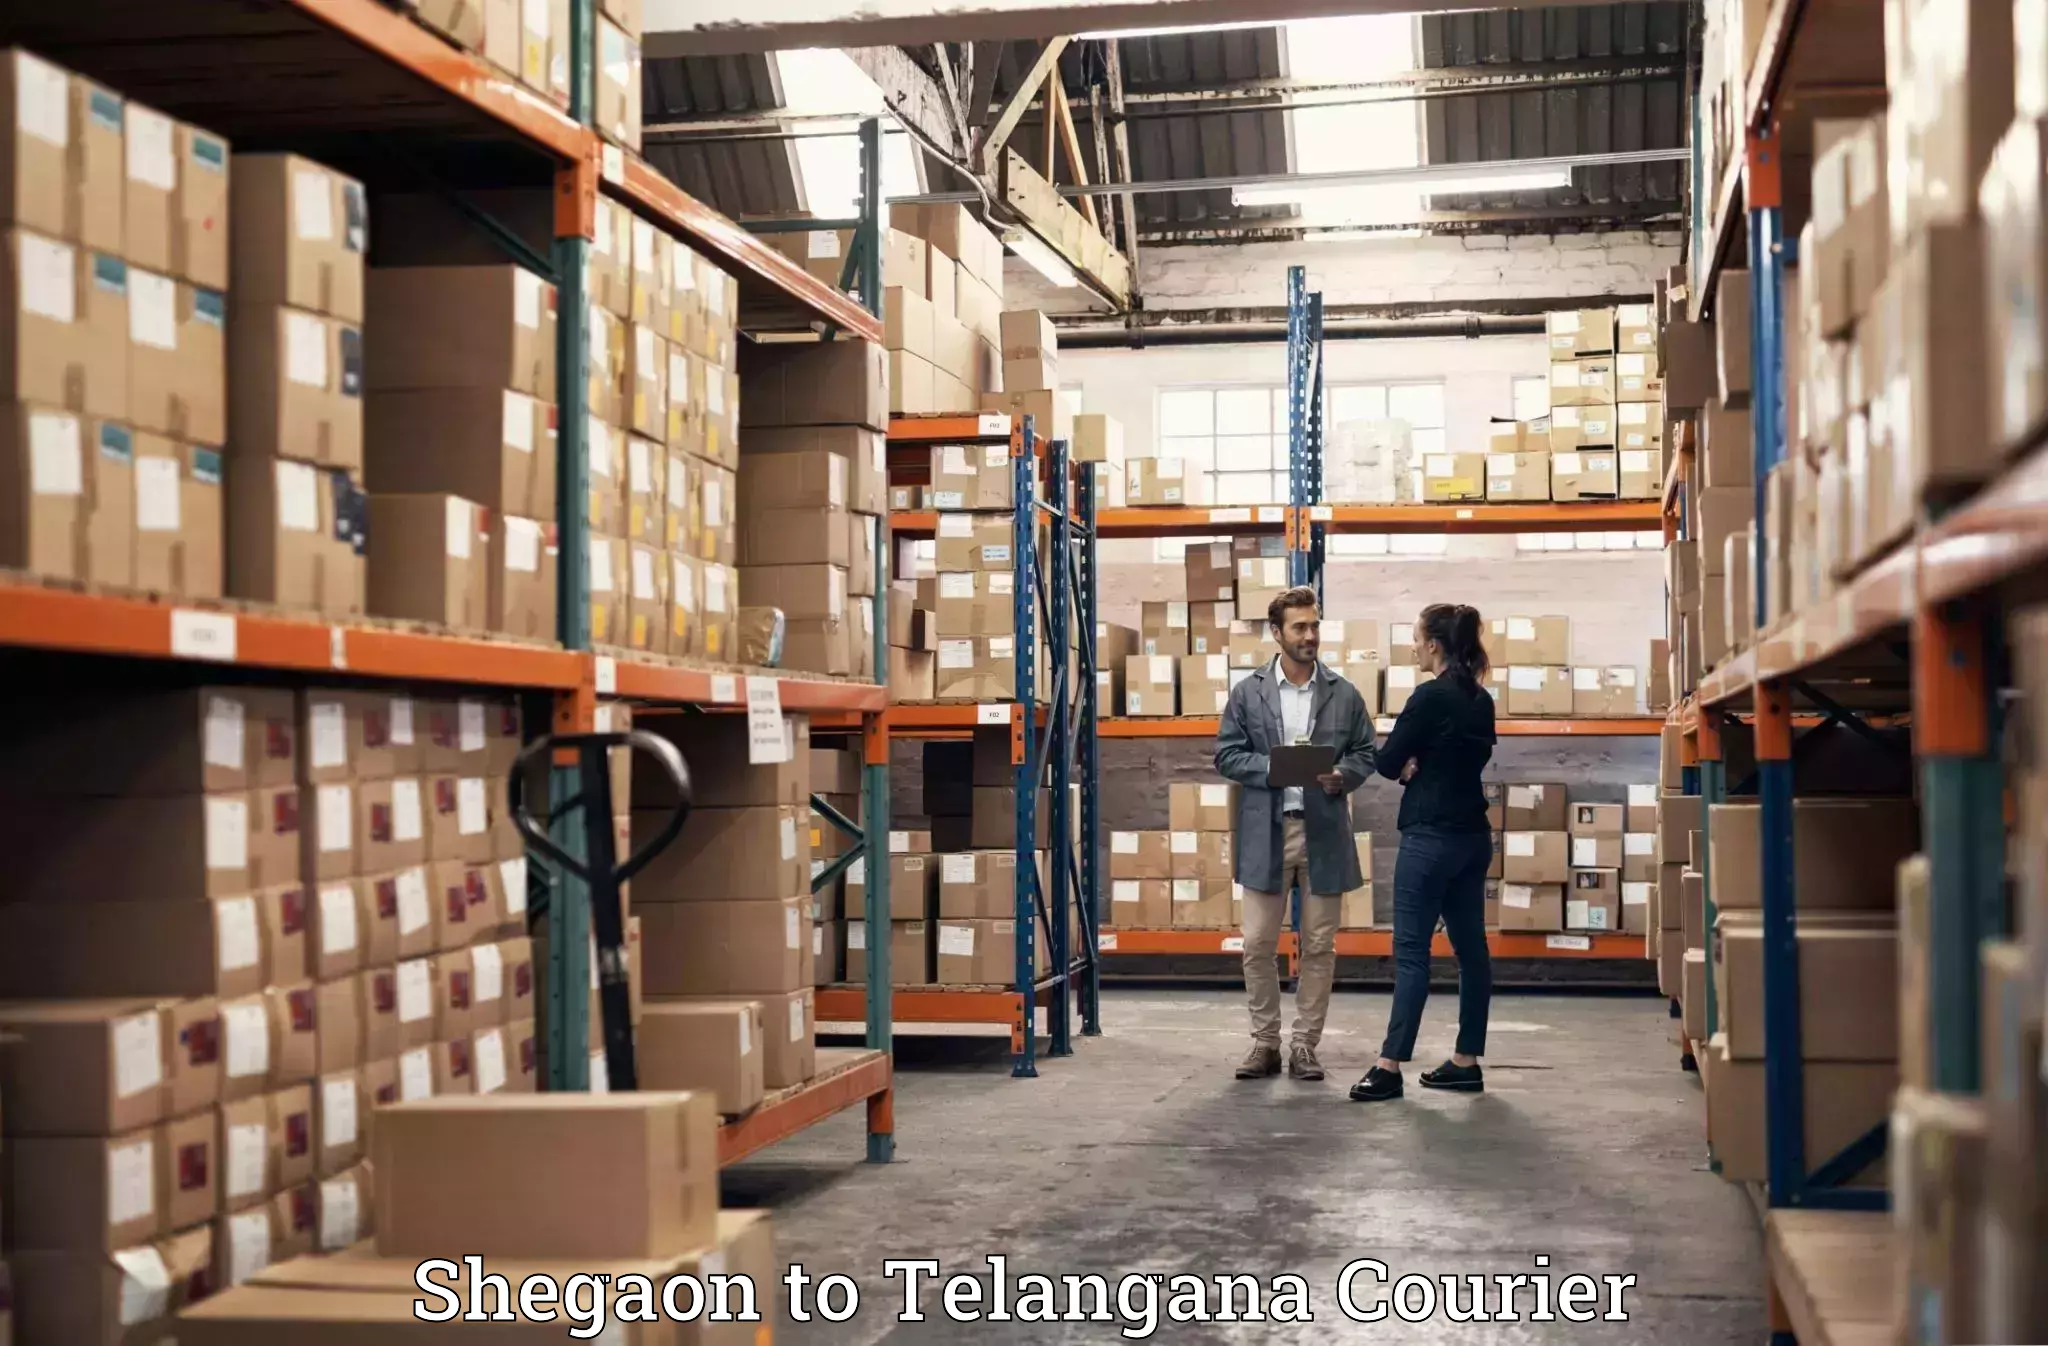 Automated luggage transport Shegaon to Professor Jayashankar Telangana State Agricultural University Hyderabad